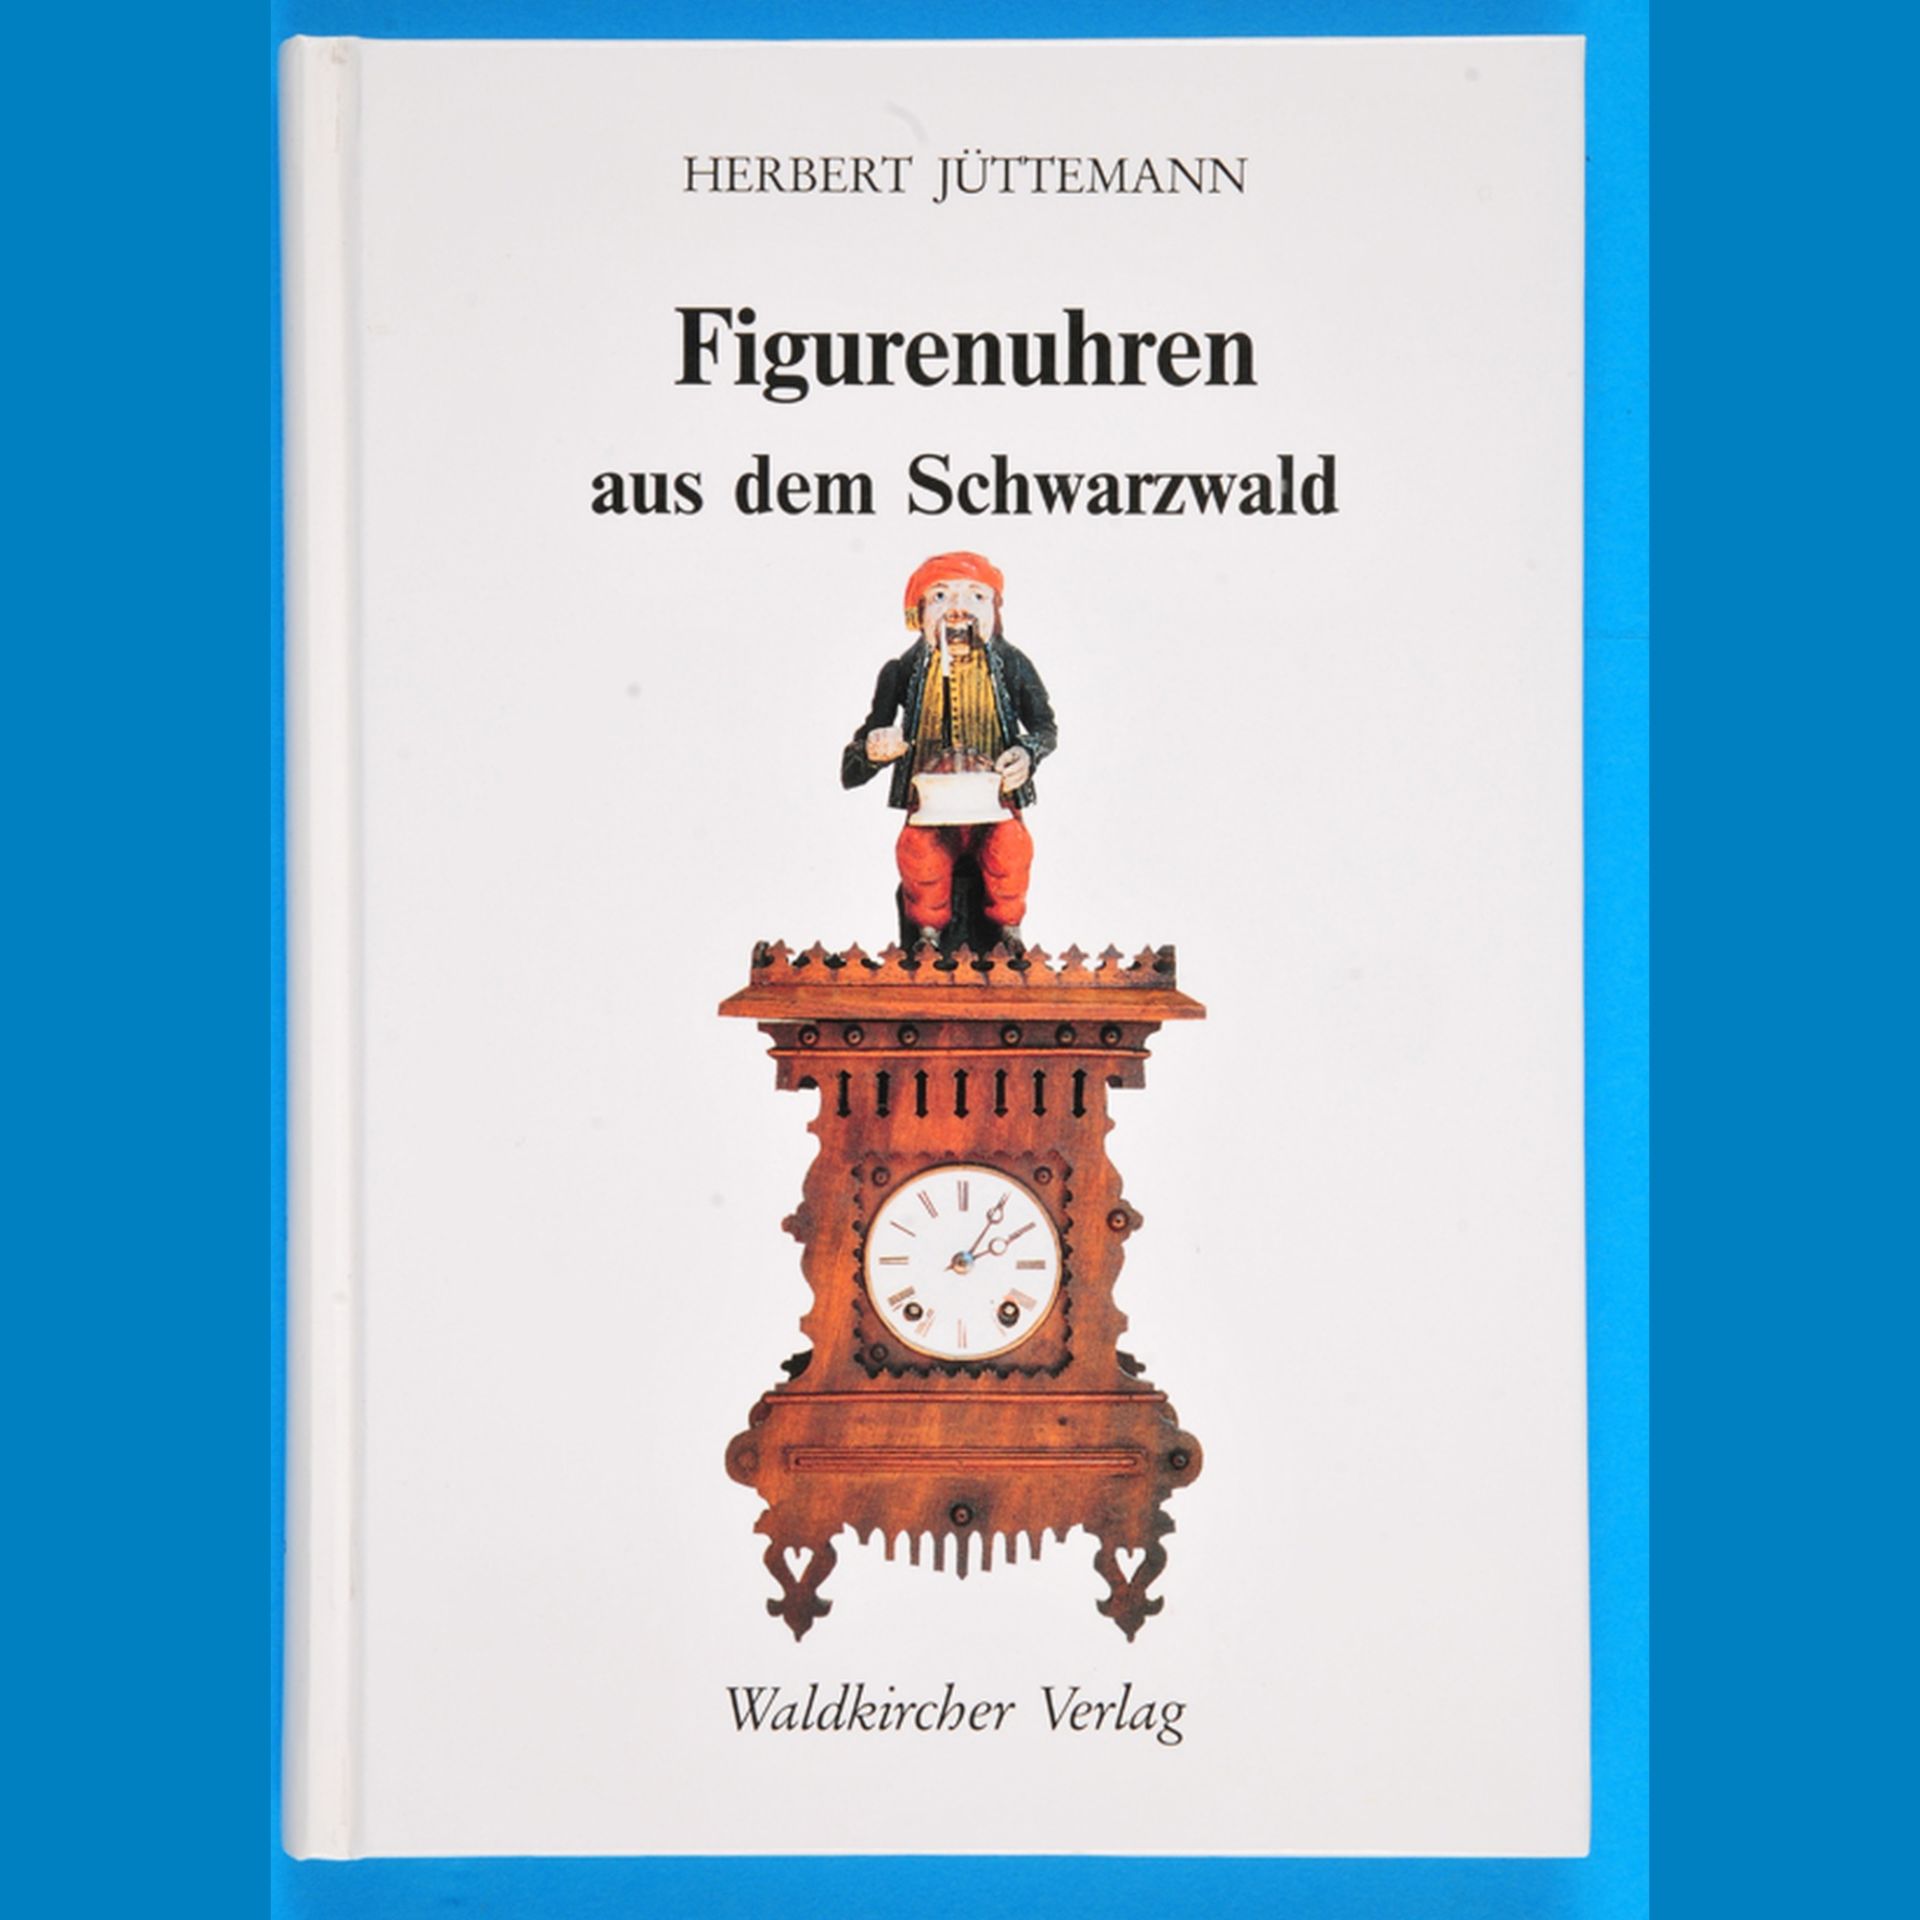 Herbert Jüttemann, Figurenuhren aus dem Schwarzwald, 1998, 168 Seiten mit 170 s/w-Fotos und